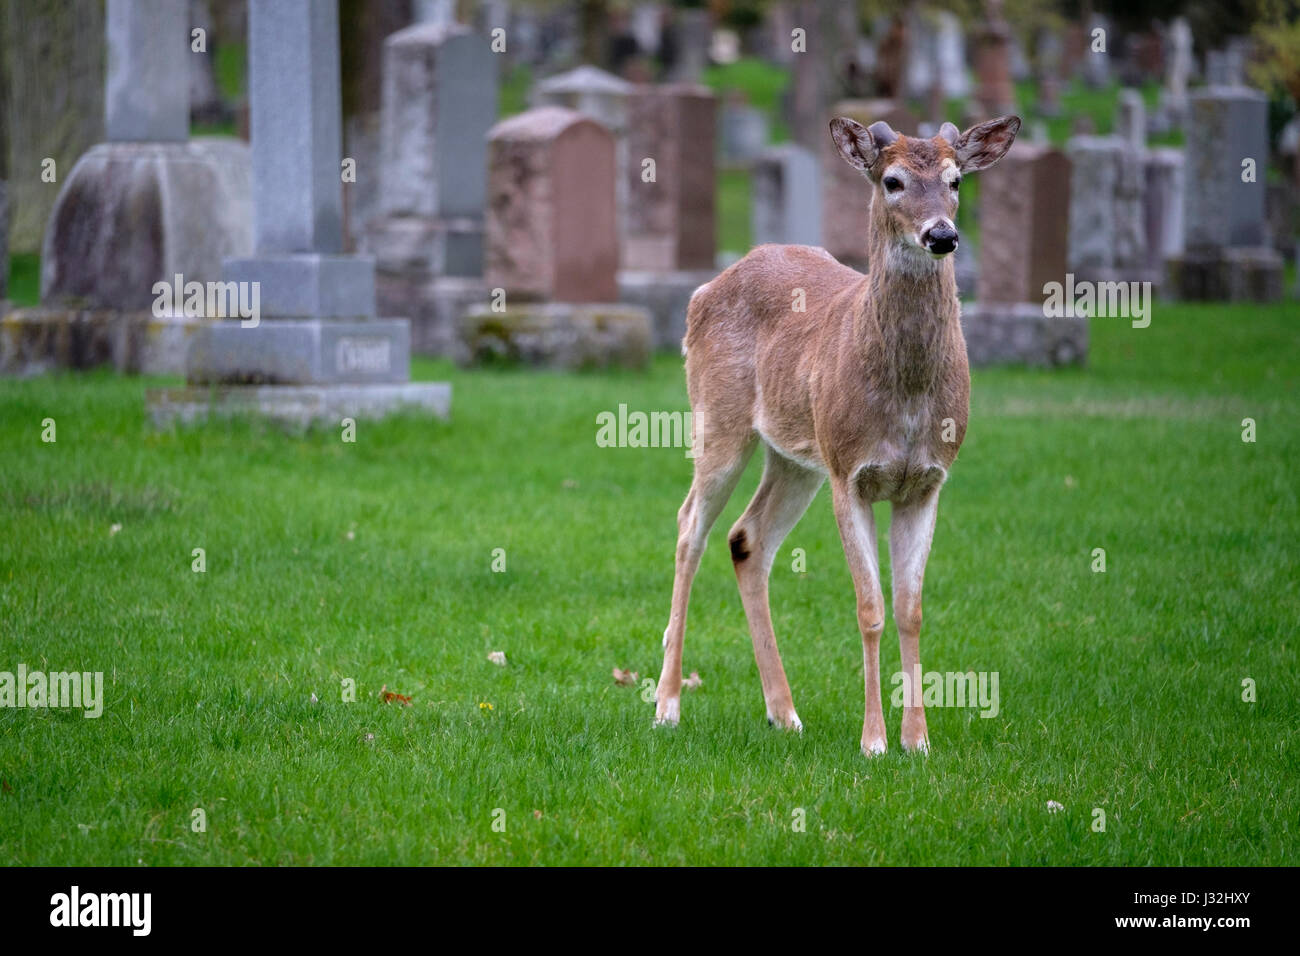 Jeune homme le cerf de Virginie (Odocoileus virginianus), buck, debout dans un champ d'herbe, l'herbe verte, un animal, un cimetière, London, Ontario, Canada. Banque D'Images